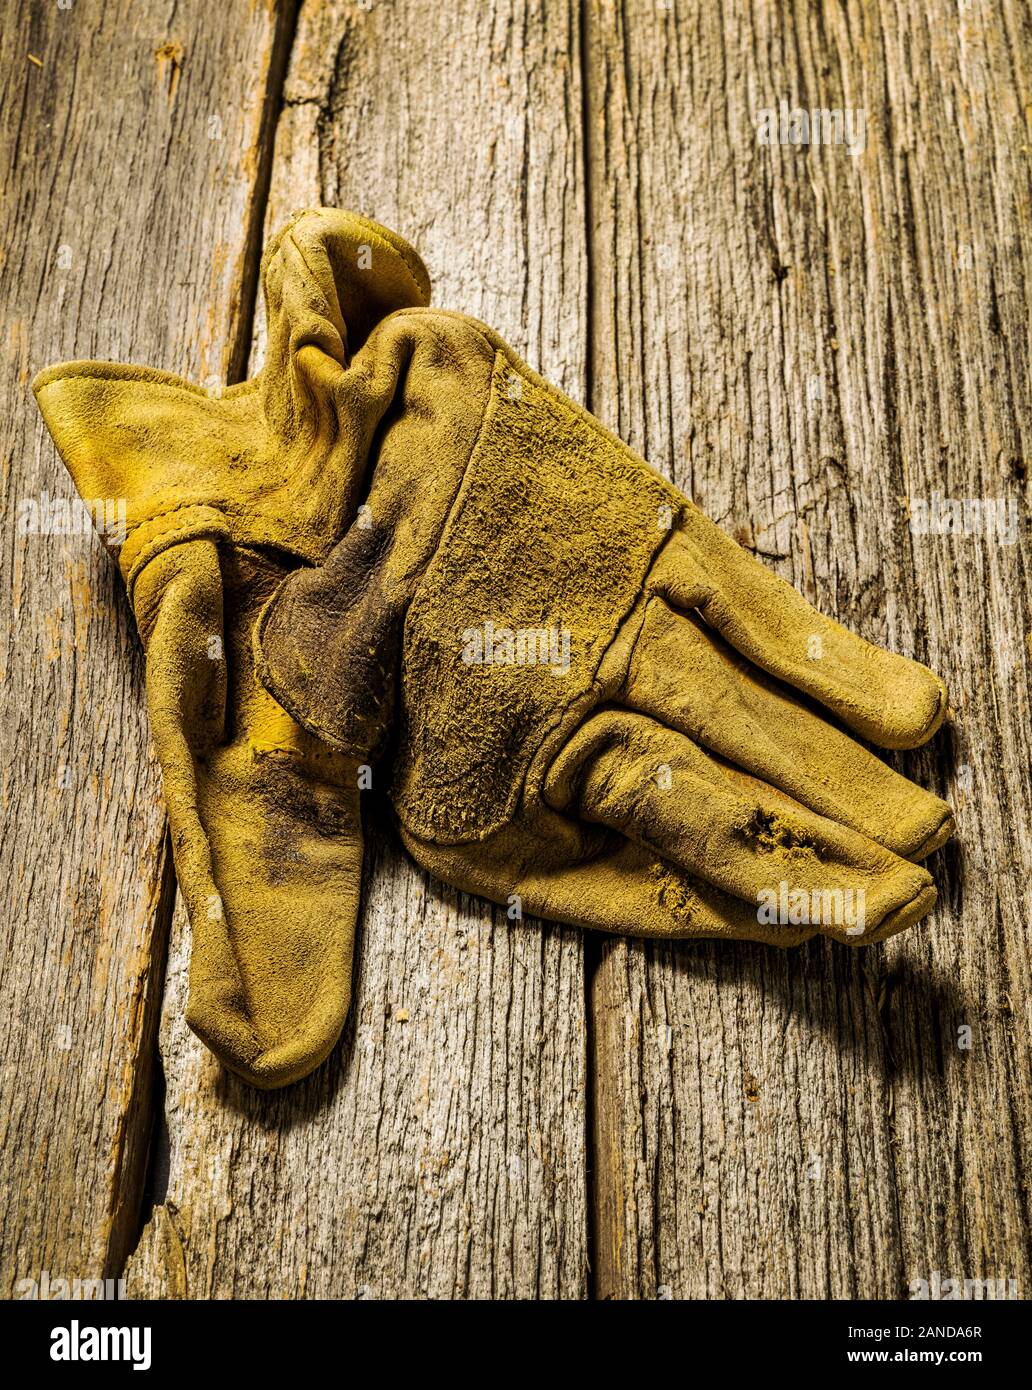 Studio ancora vita close-up di cuoio indossati guanti da lavoro Foto Stock